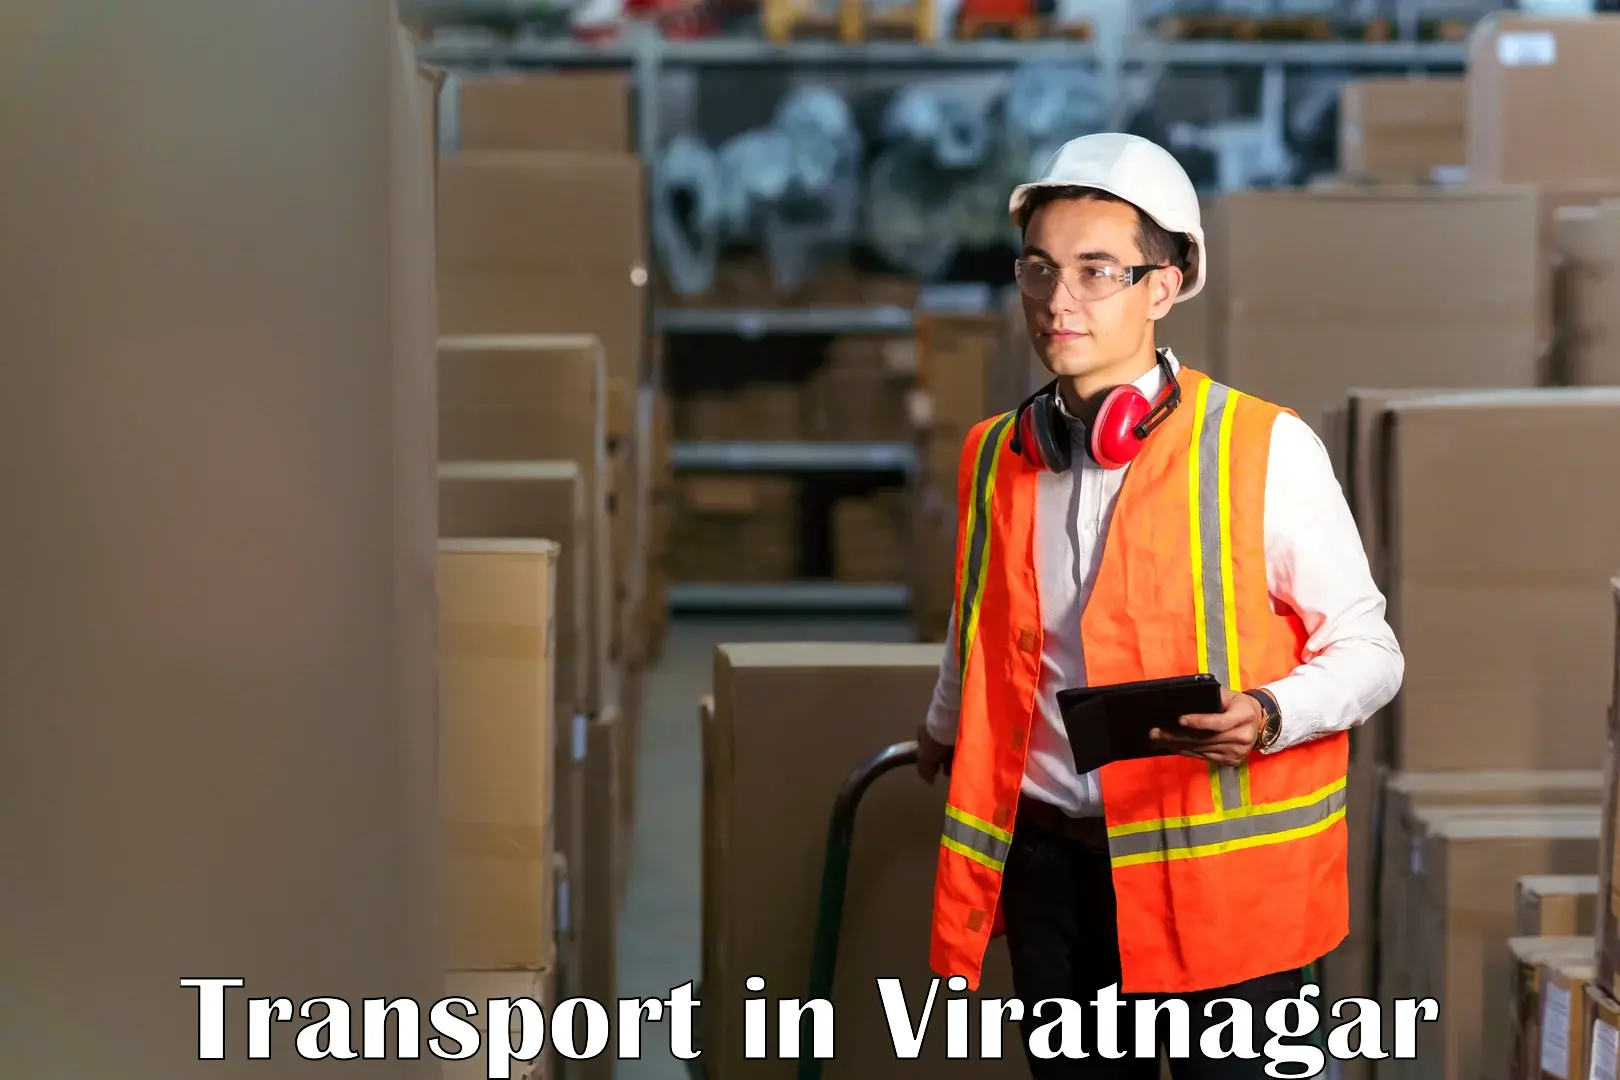 Daily transport service in Viratnagar